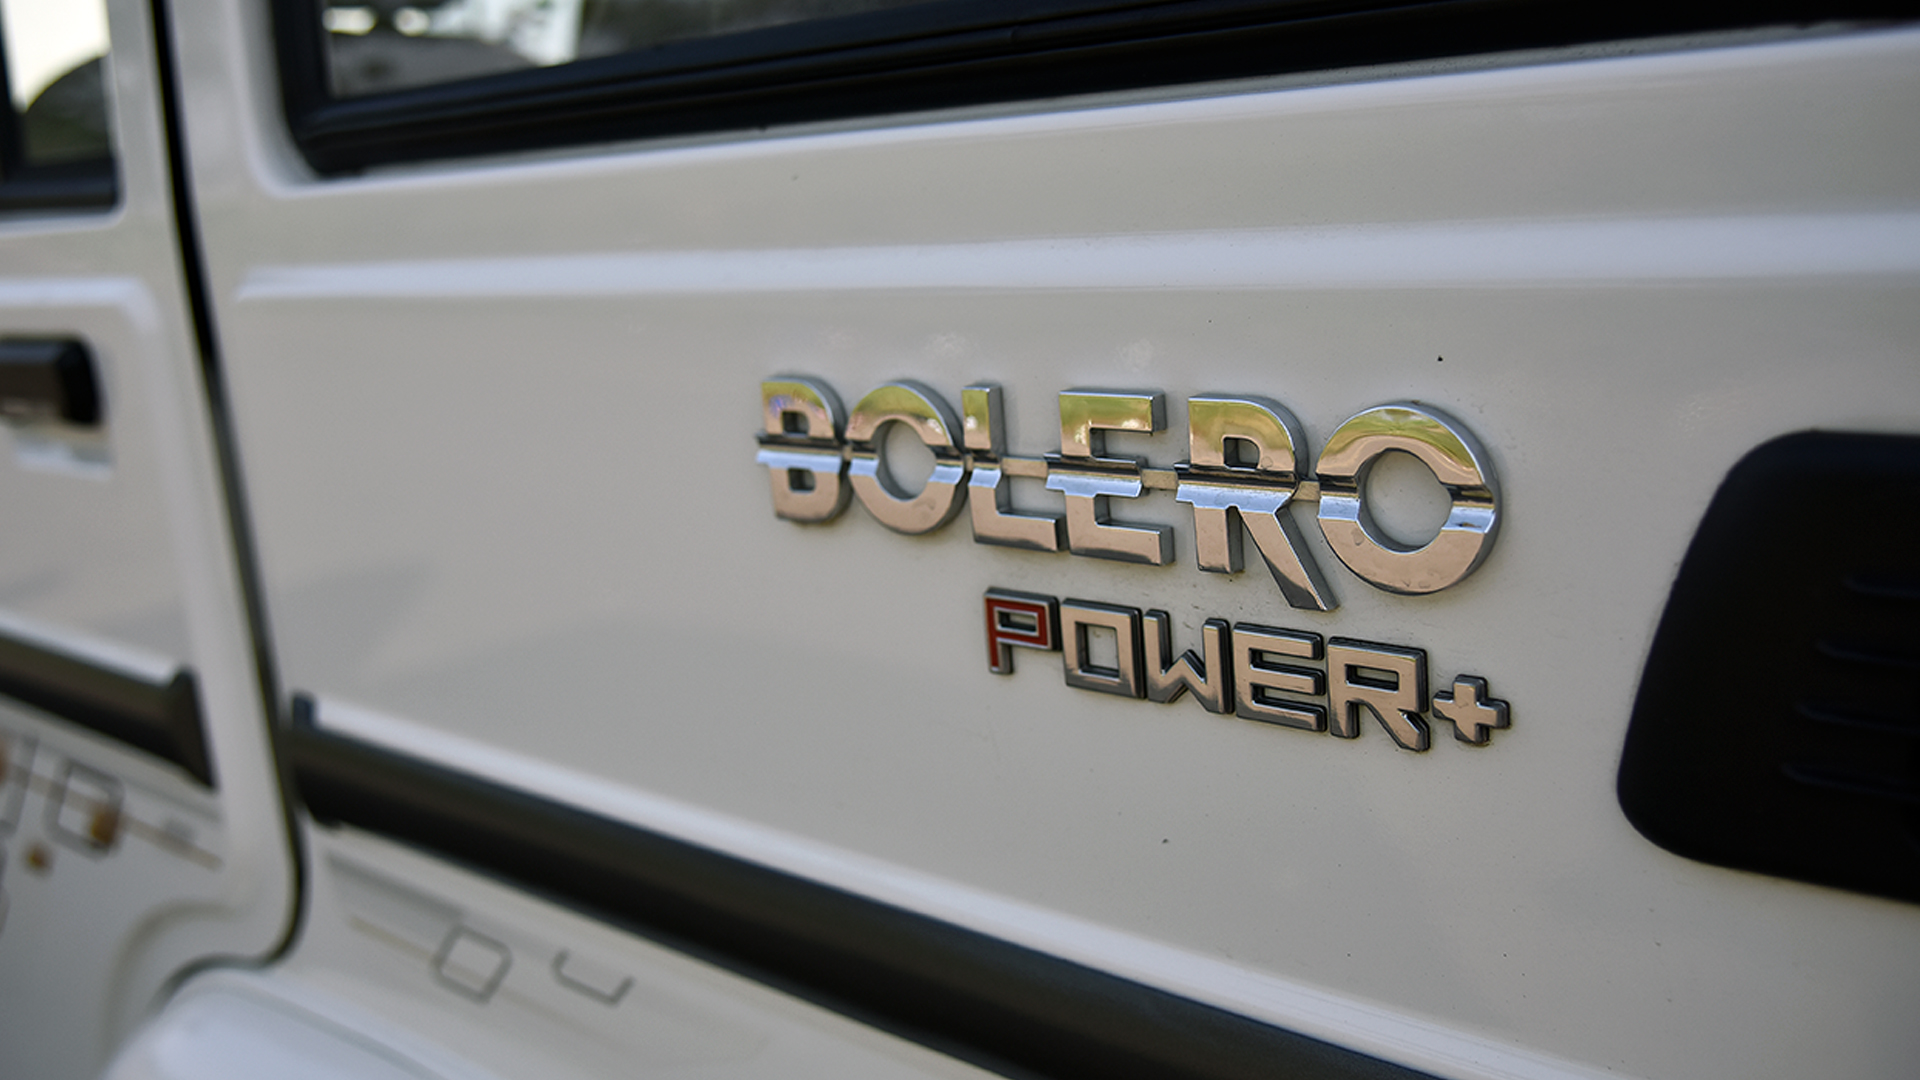 Mahindra Bolero 2019 Power Slx Price Mileage Reviews